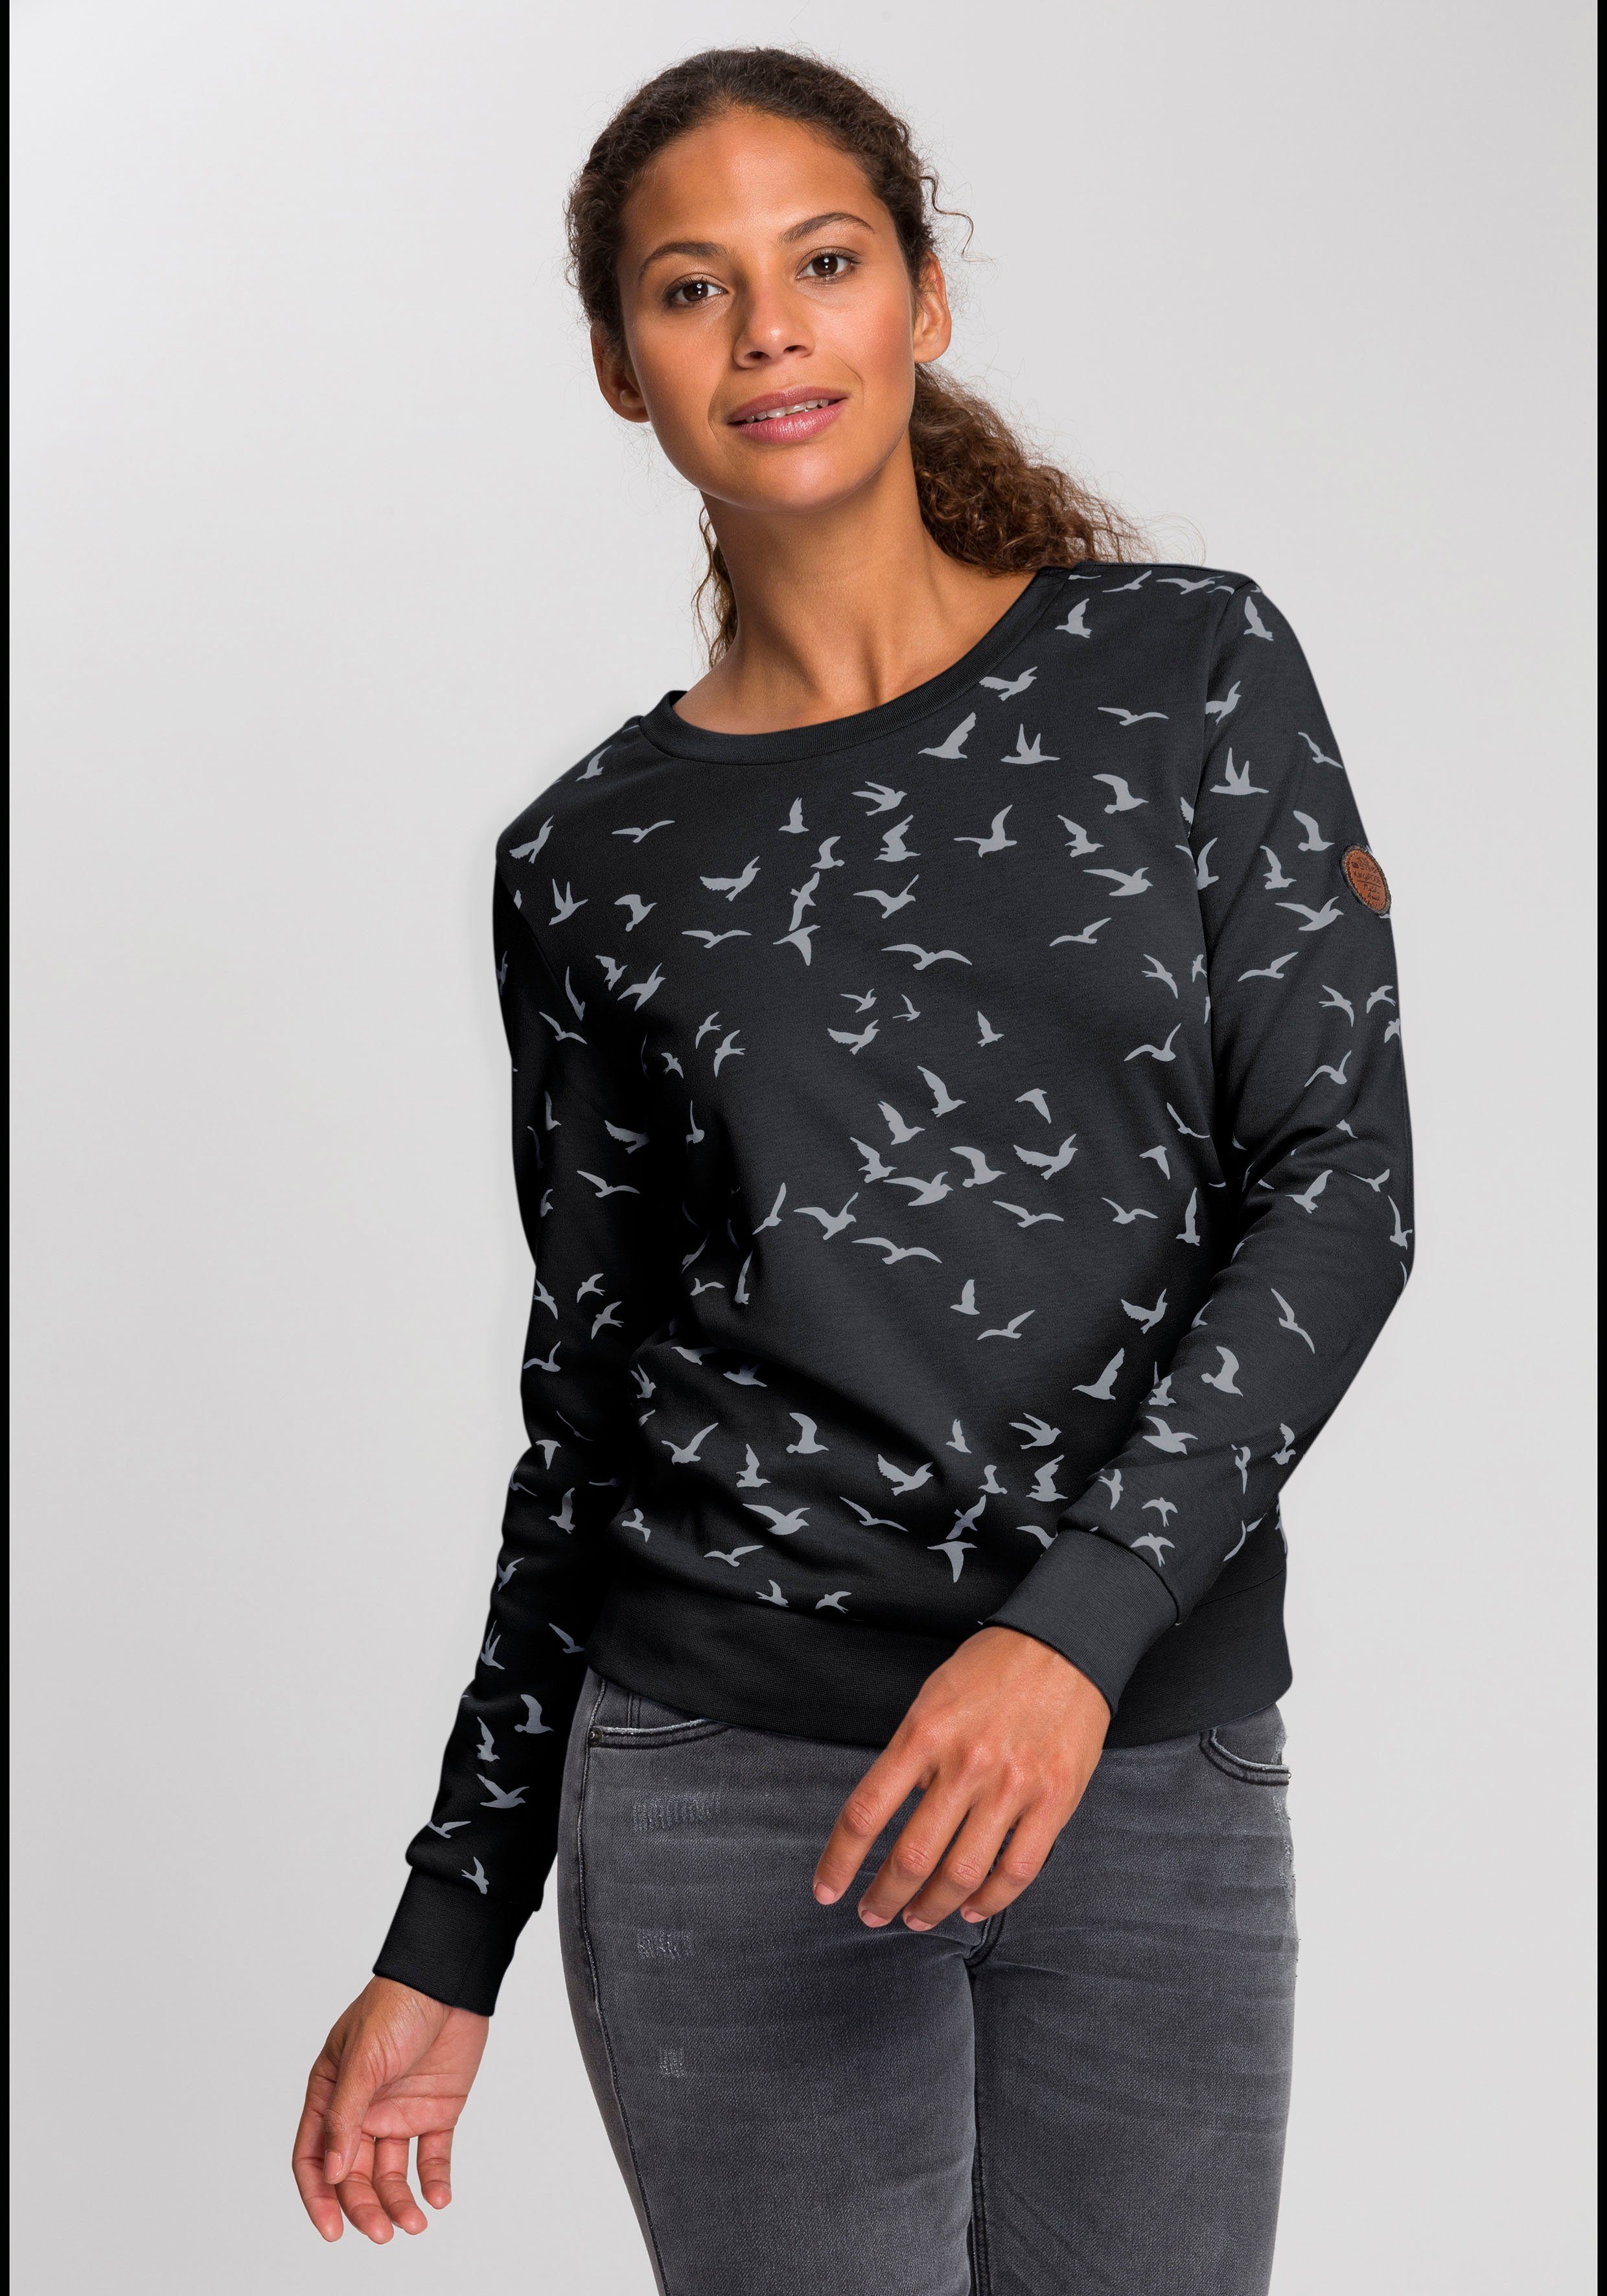 KangaROOS Sweatshirt mit modischem Minimal-Allover-Print schwarz